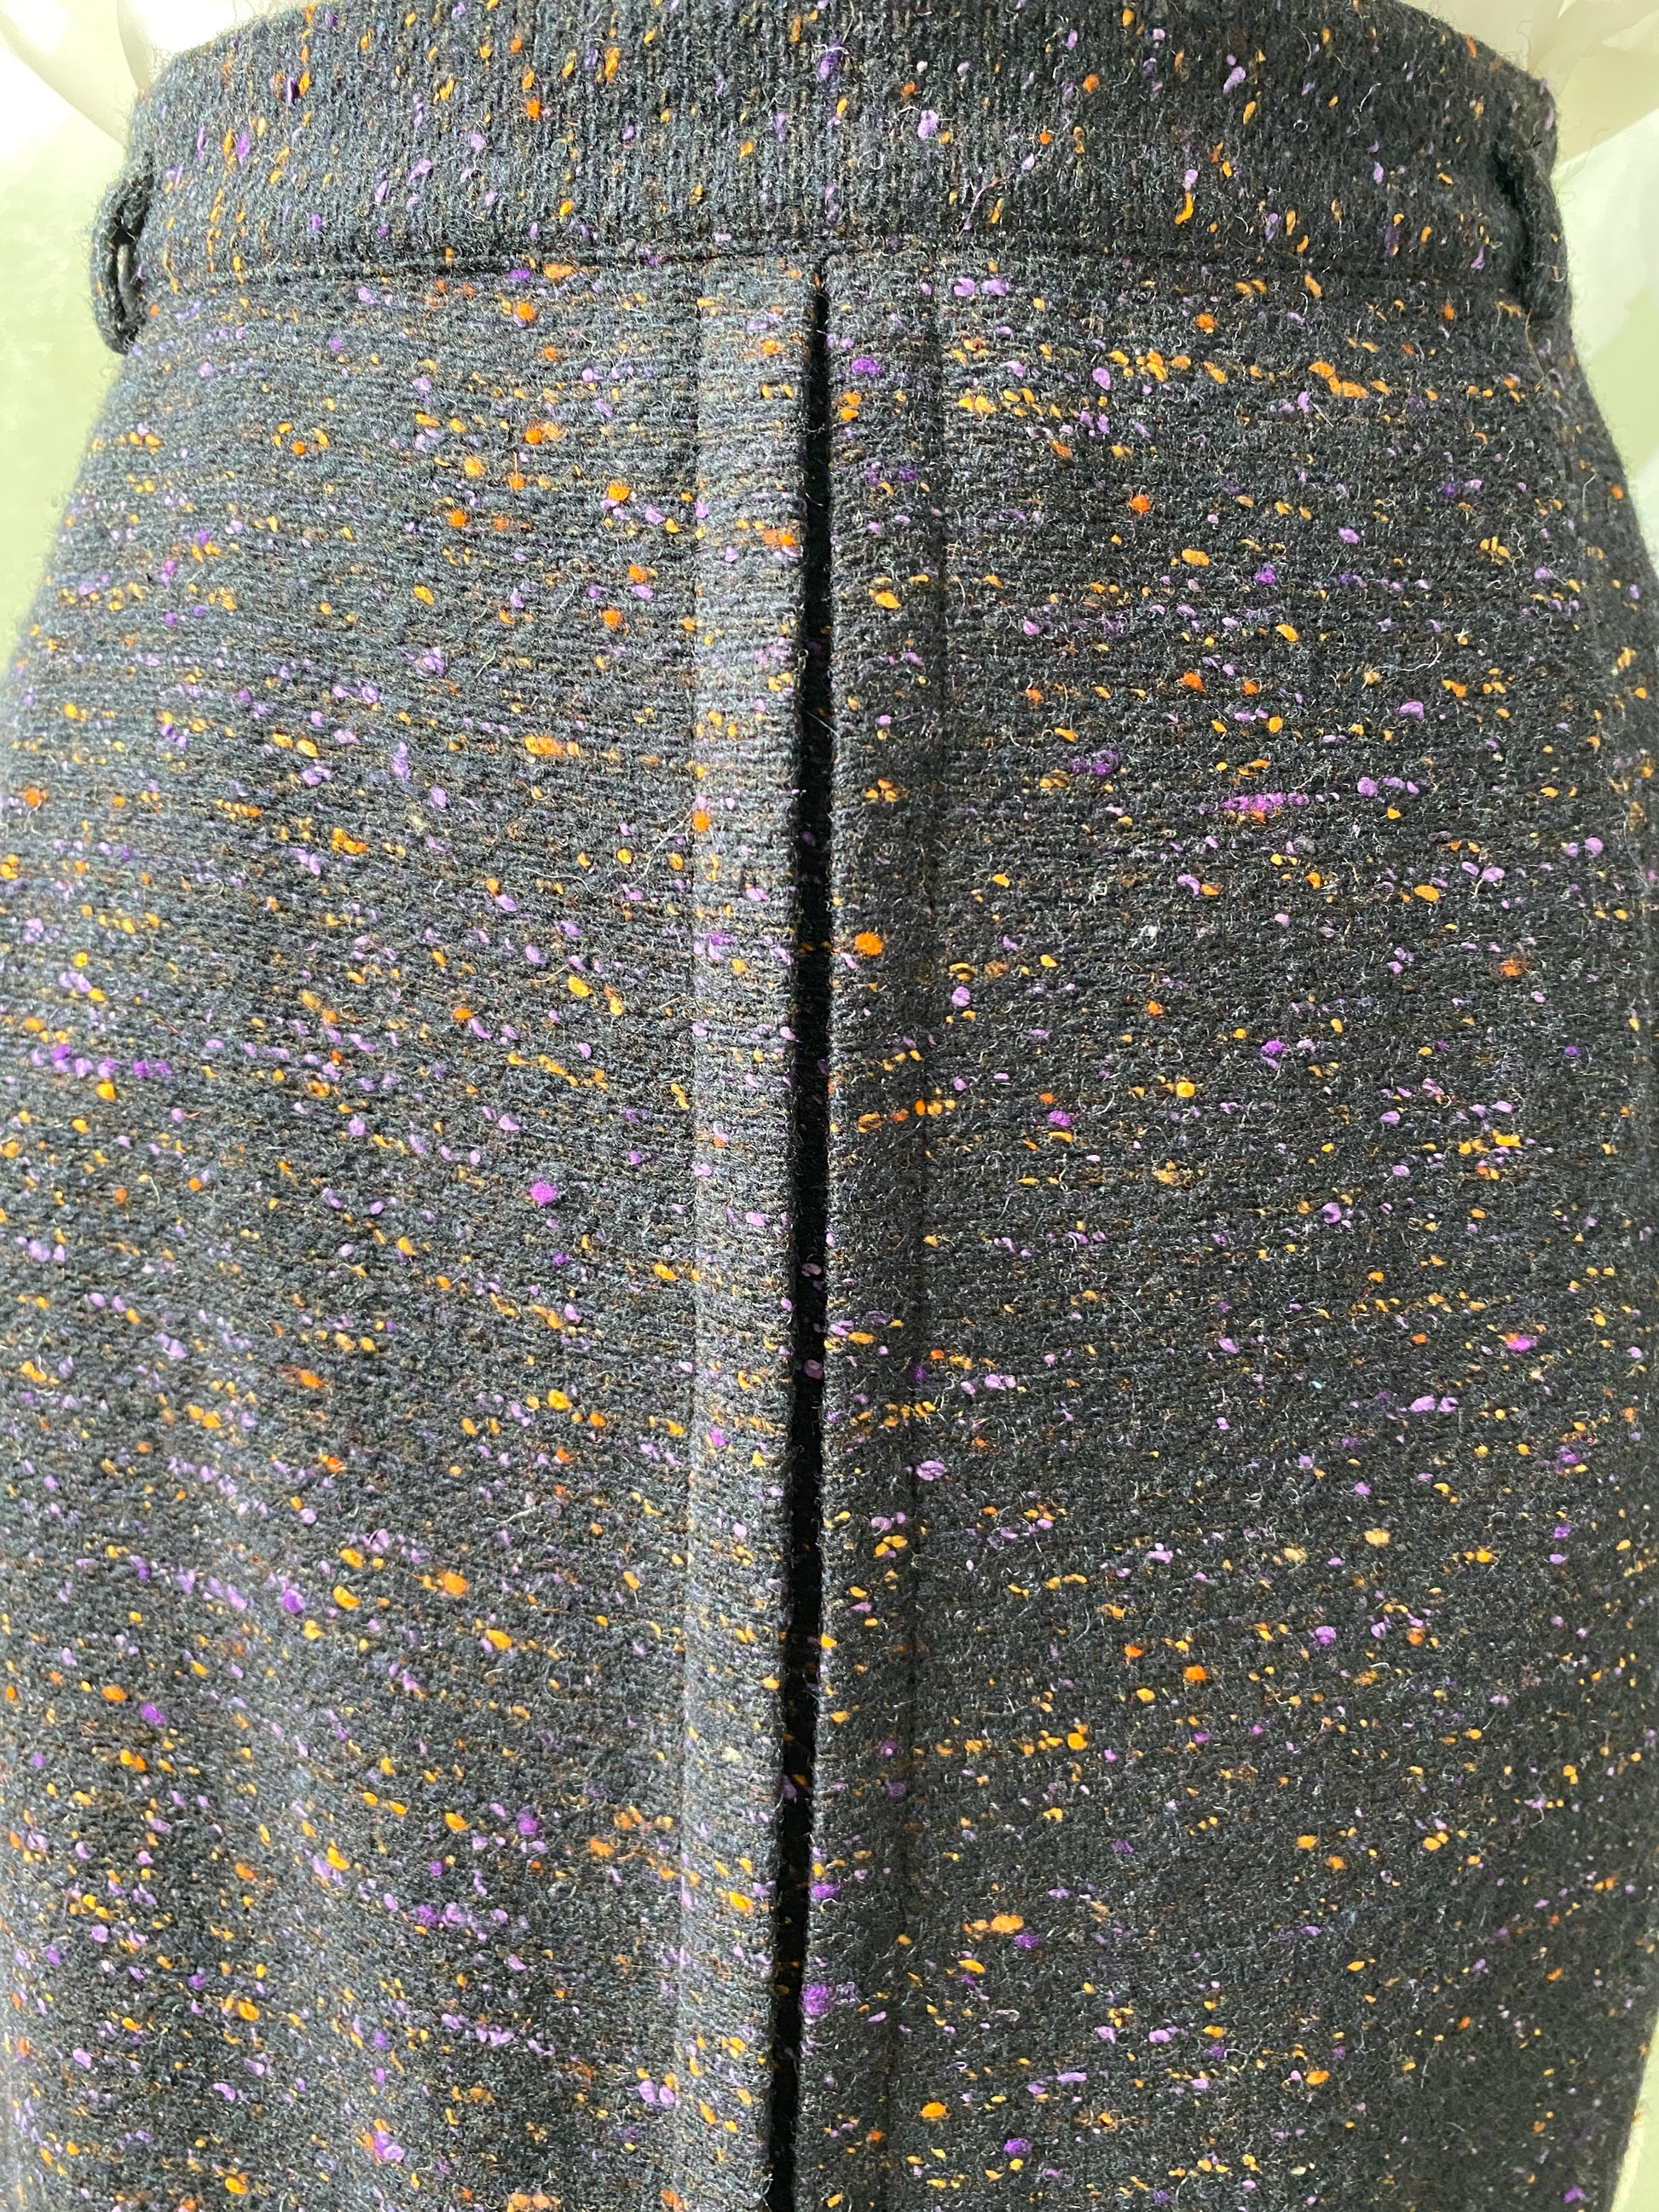 Vintage 1950s Flecked Wool Pencil Skirt, Medium 